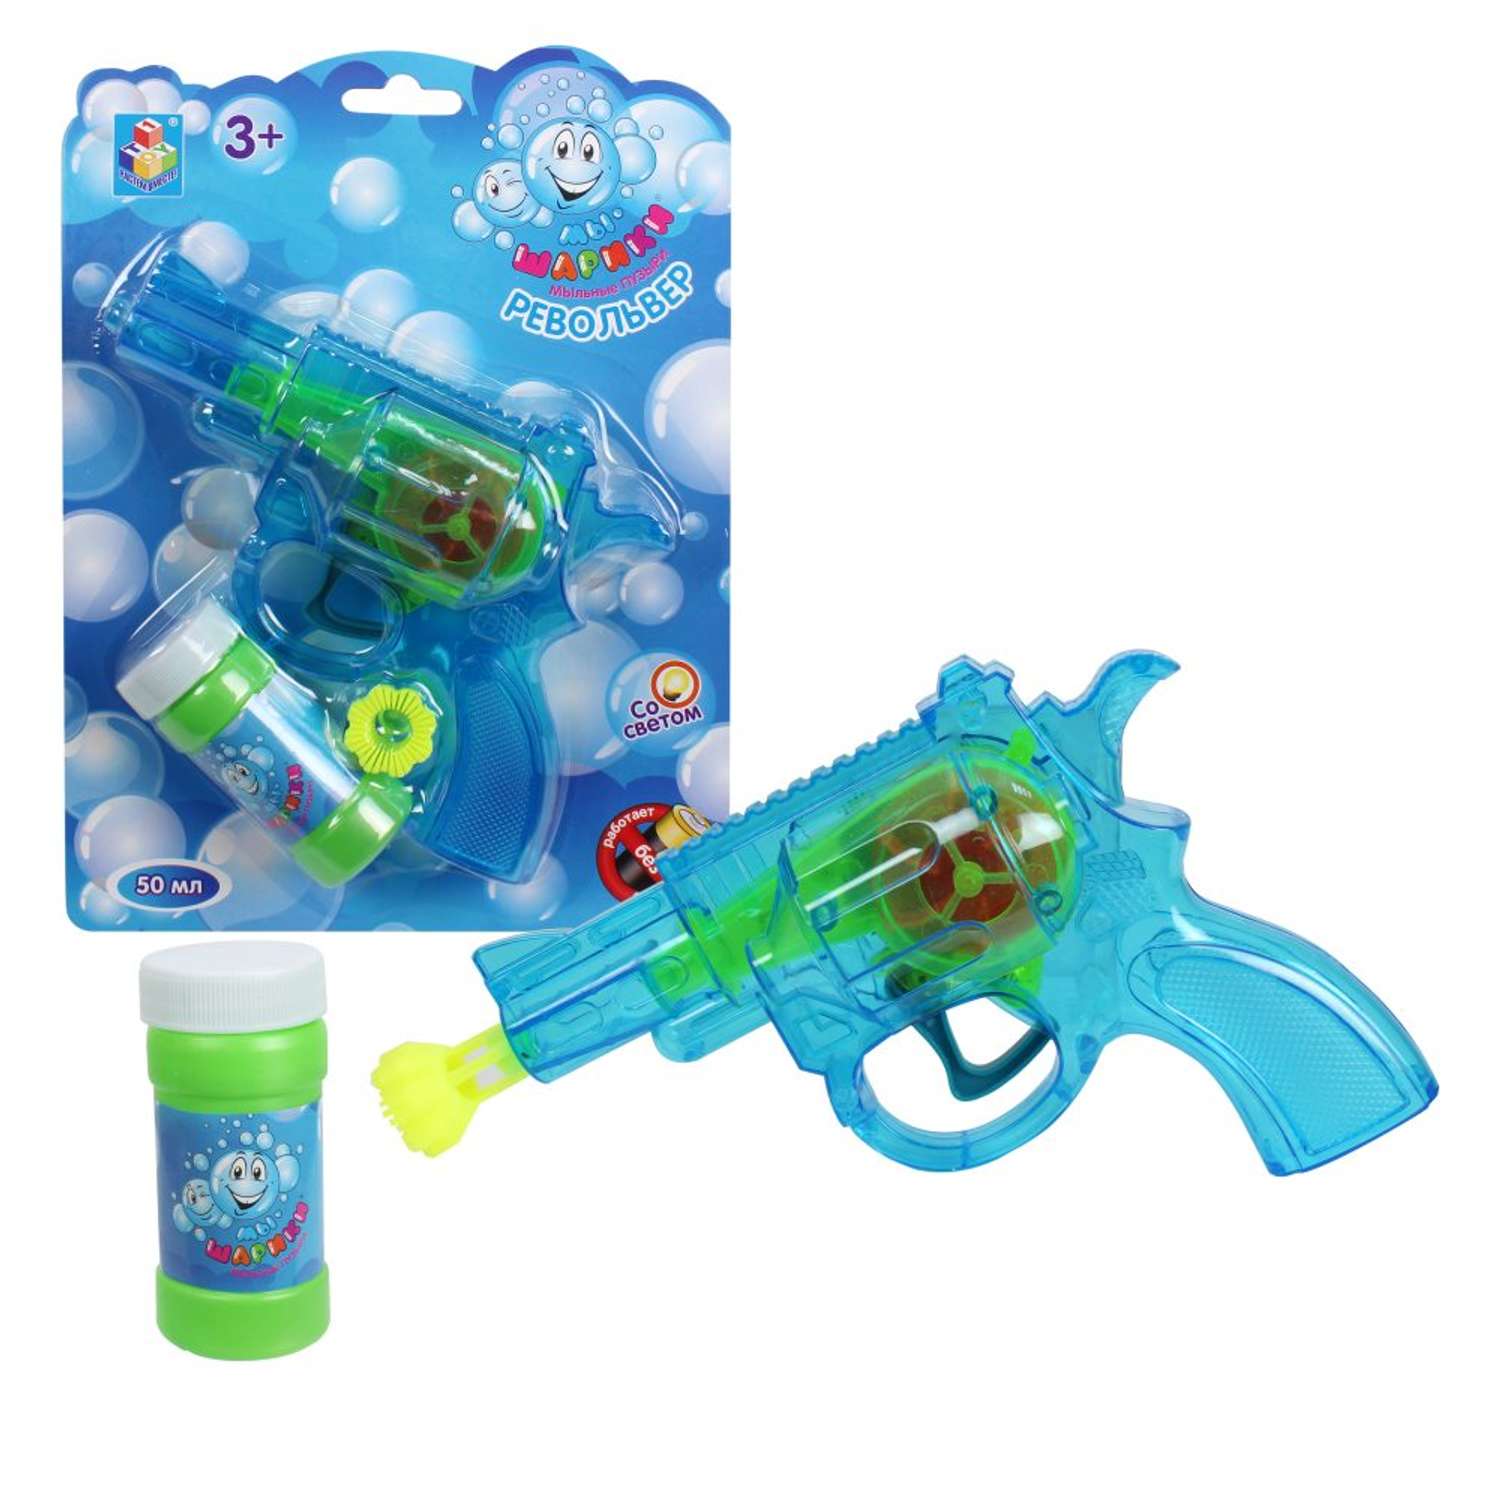 Генератор мыльных пузырей Мы-шарики 1YOY с раствором со световыми эффектами пистолет бластер детские игрушки для улицы - фото 1